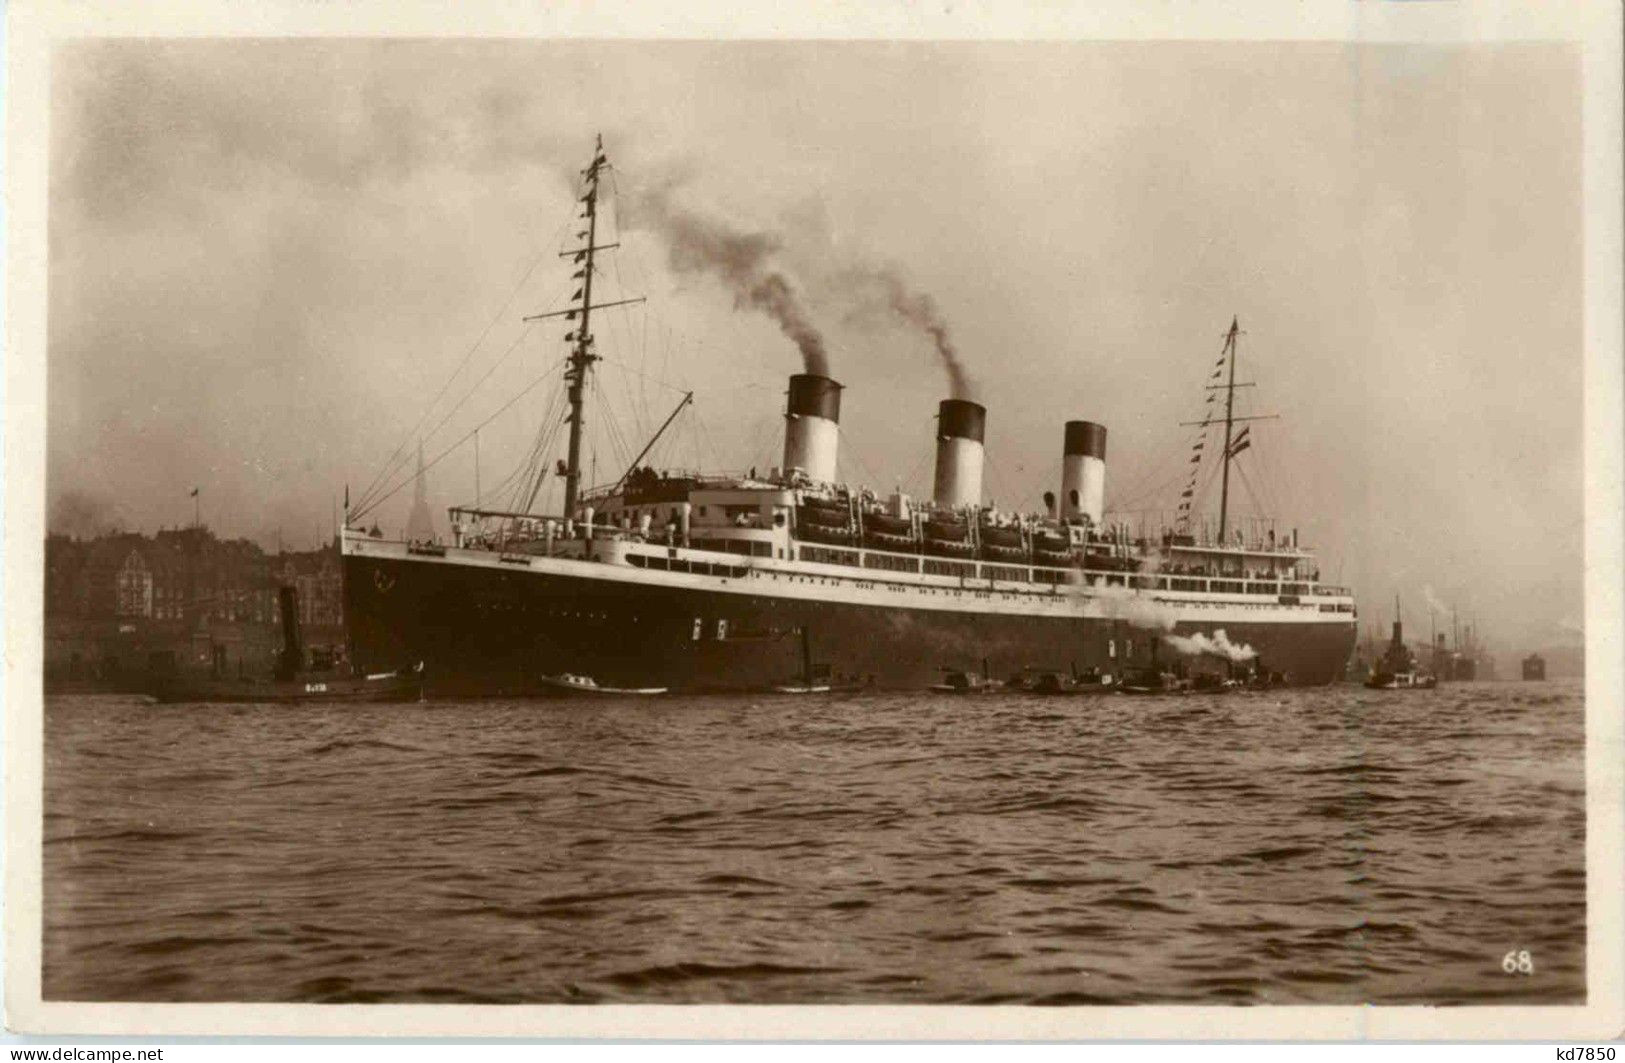 Dampfer Cap Arcona - Passagiersschepen